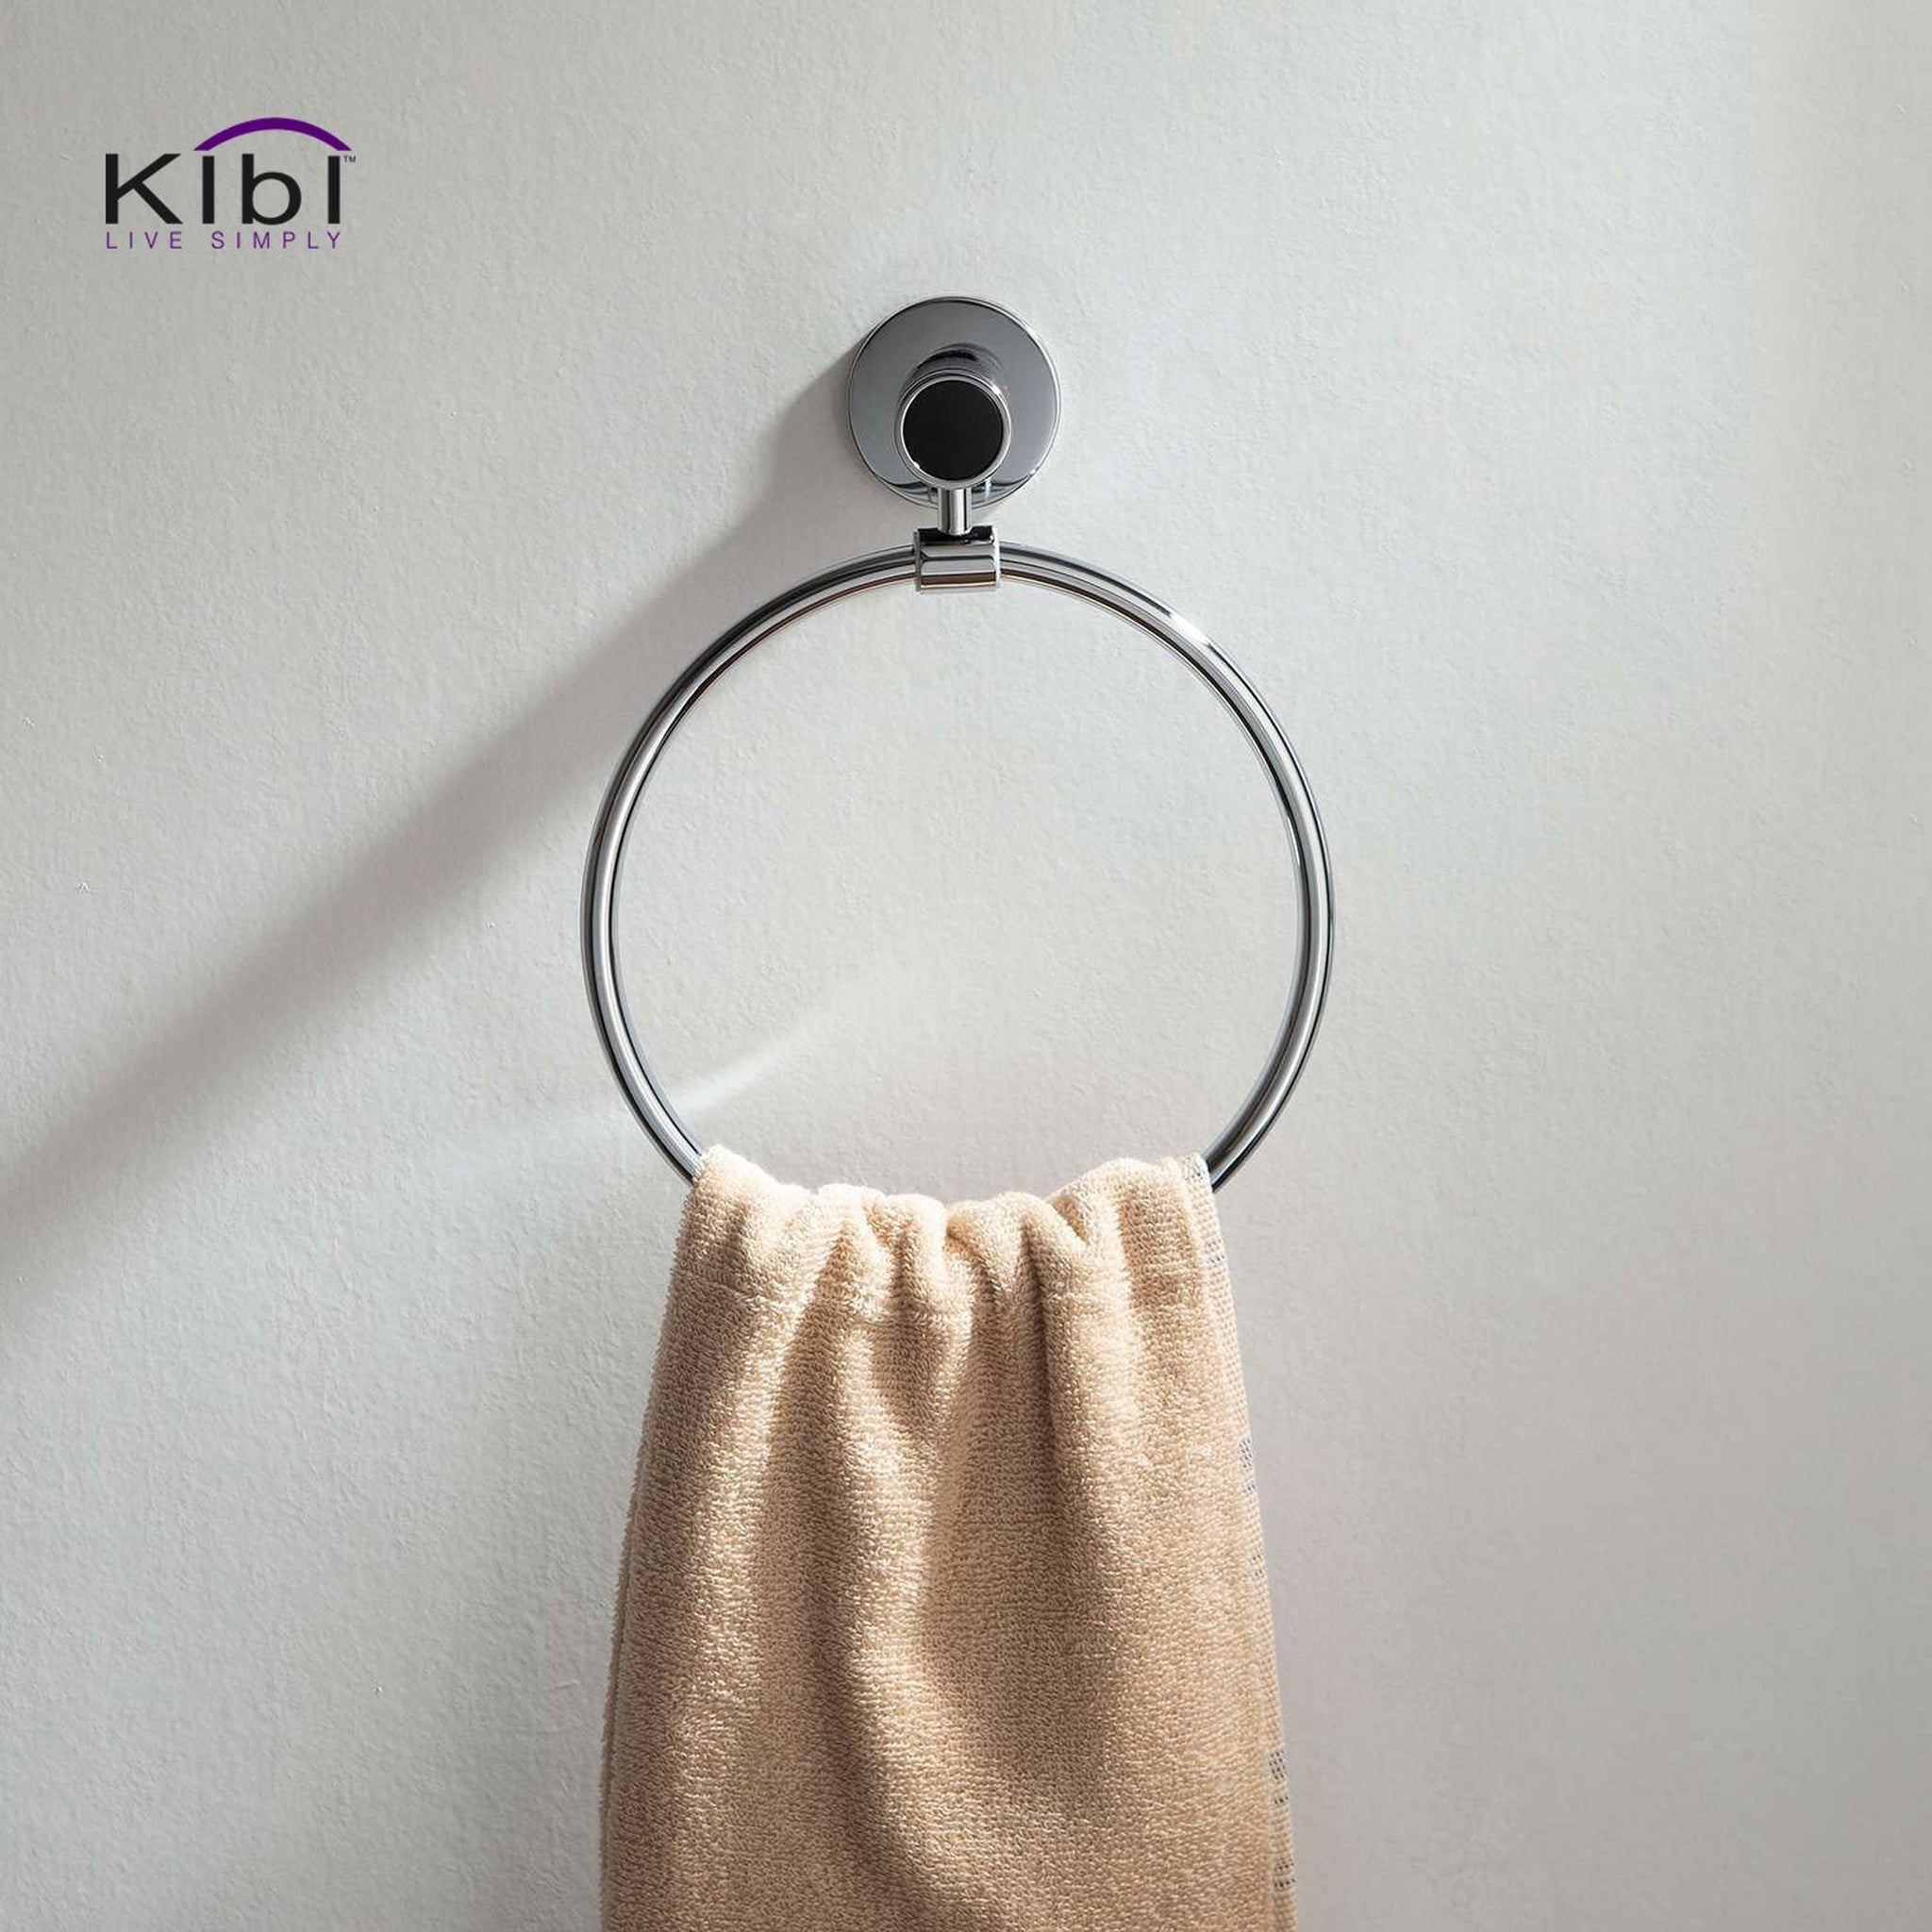 KIBI, KIBI Abaco Bathroom Towel Ring in Chrome Black Finish